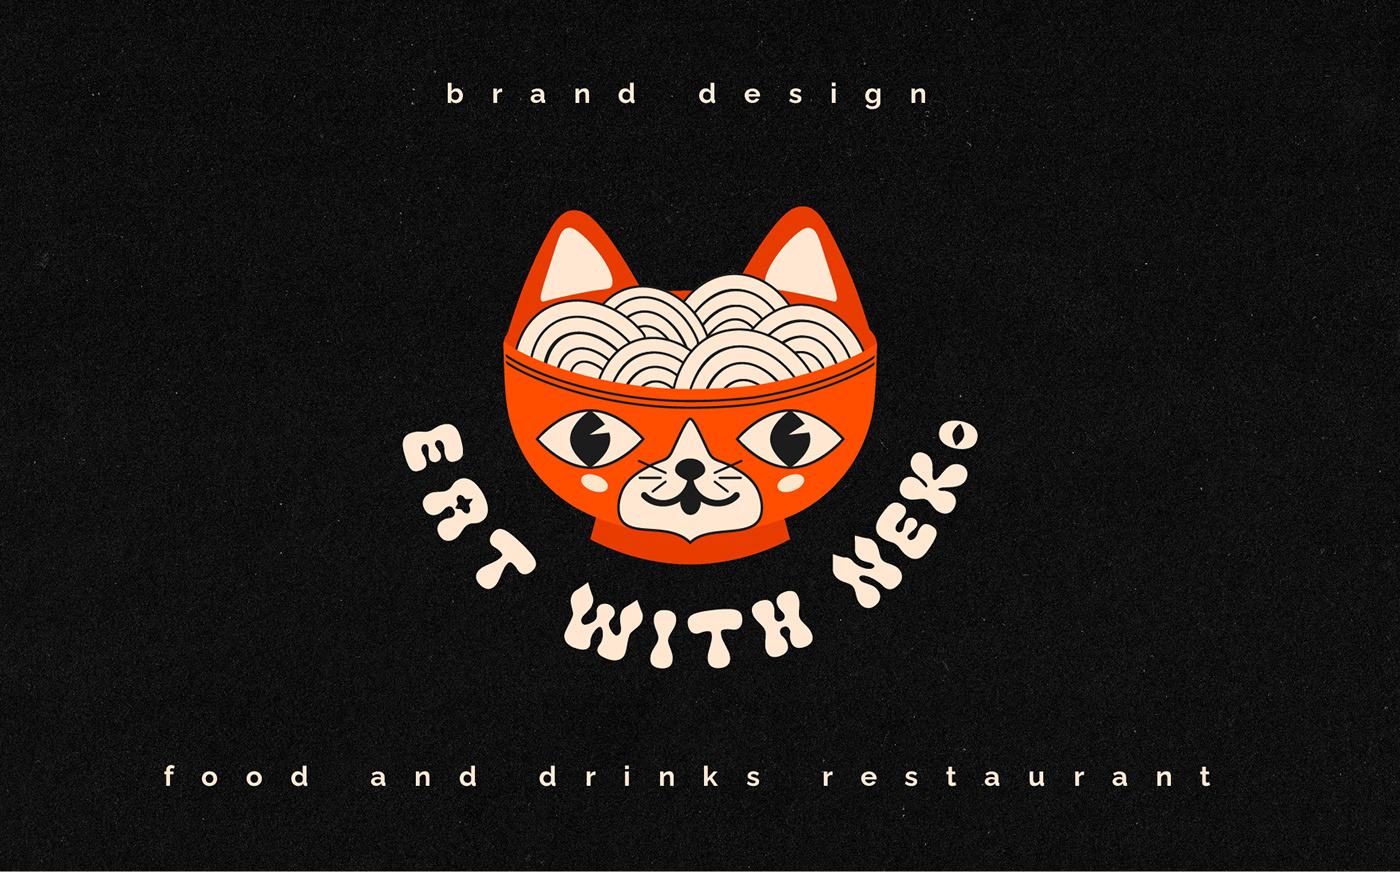 graphic design  branding  Logo Design restaurant Food  menu ILLUSTRATION  vector adobe illustrator Social media post